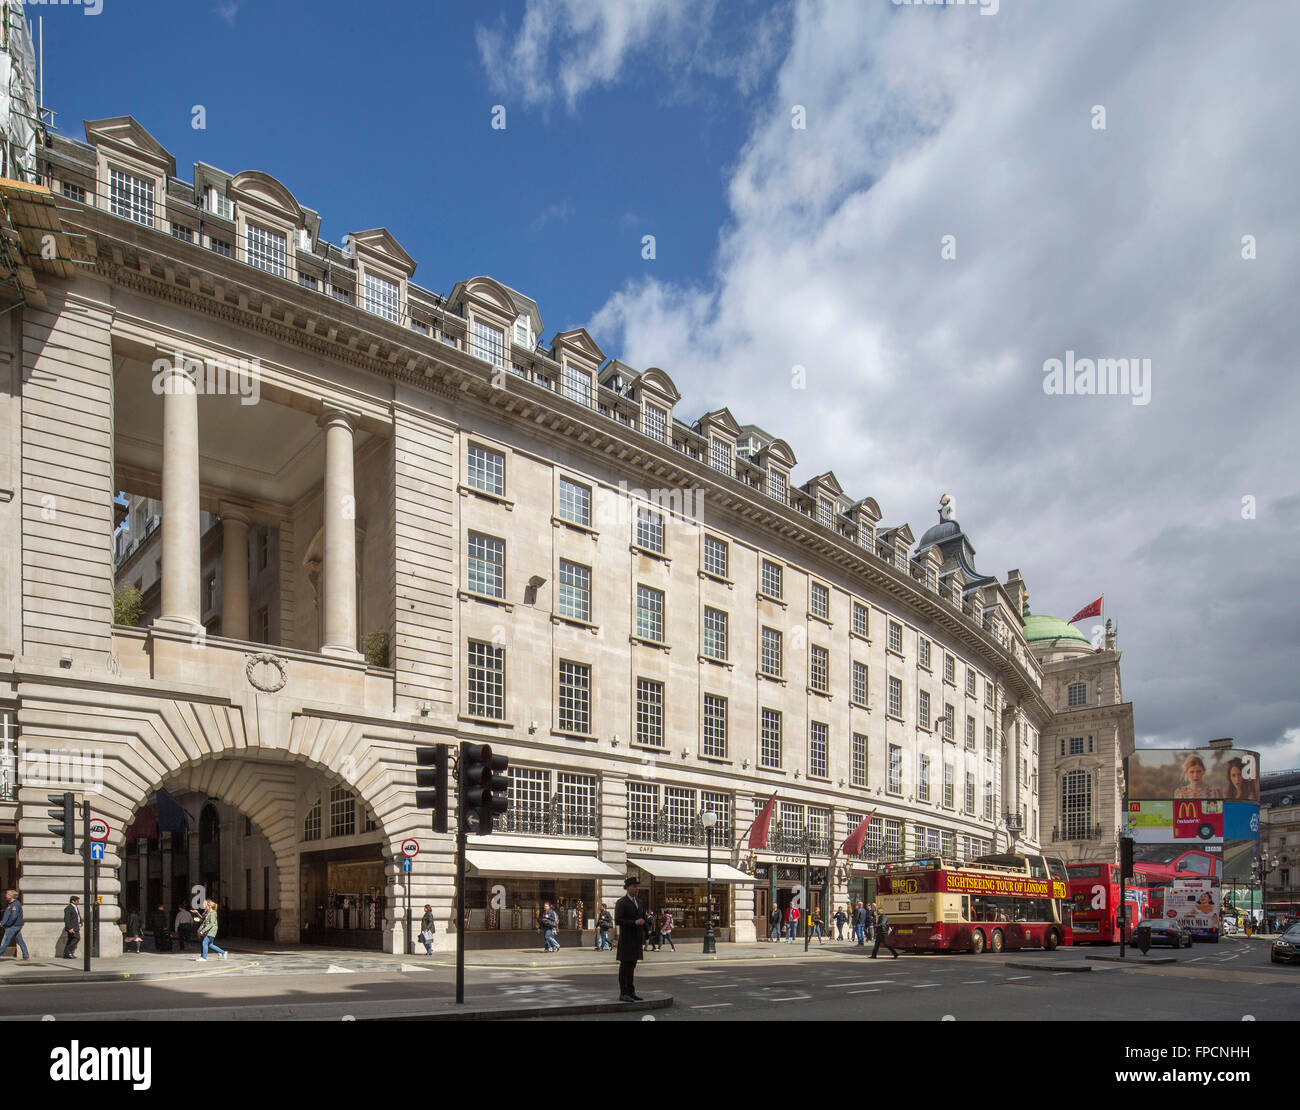 Eine Außenansicht des ein berühmtes Gebäude in London, The Cafe Royal. Stockfoto